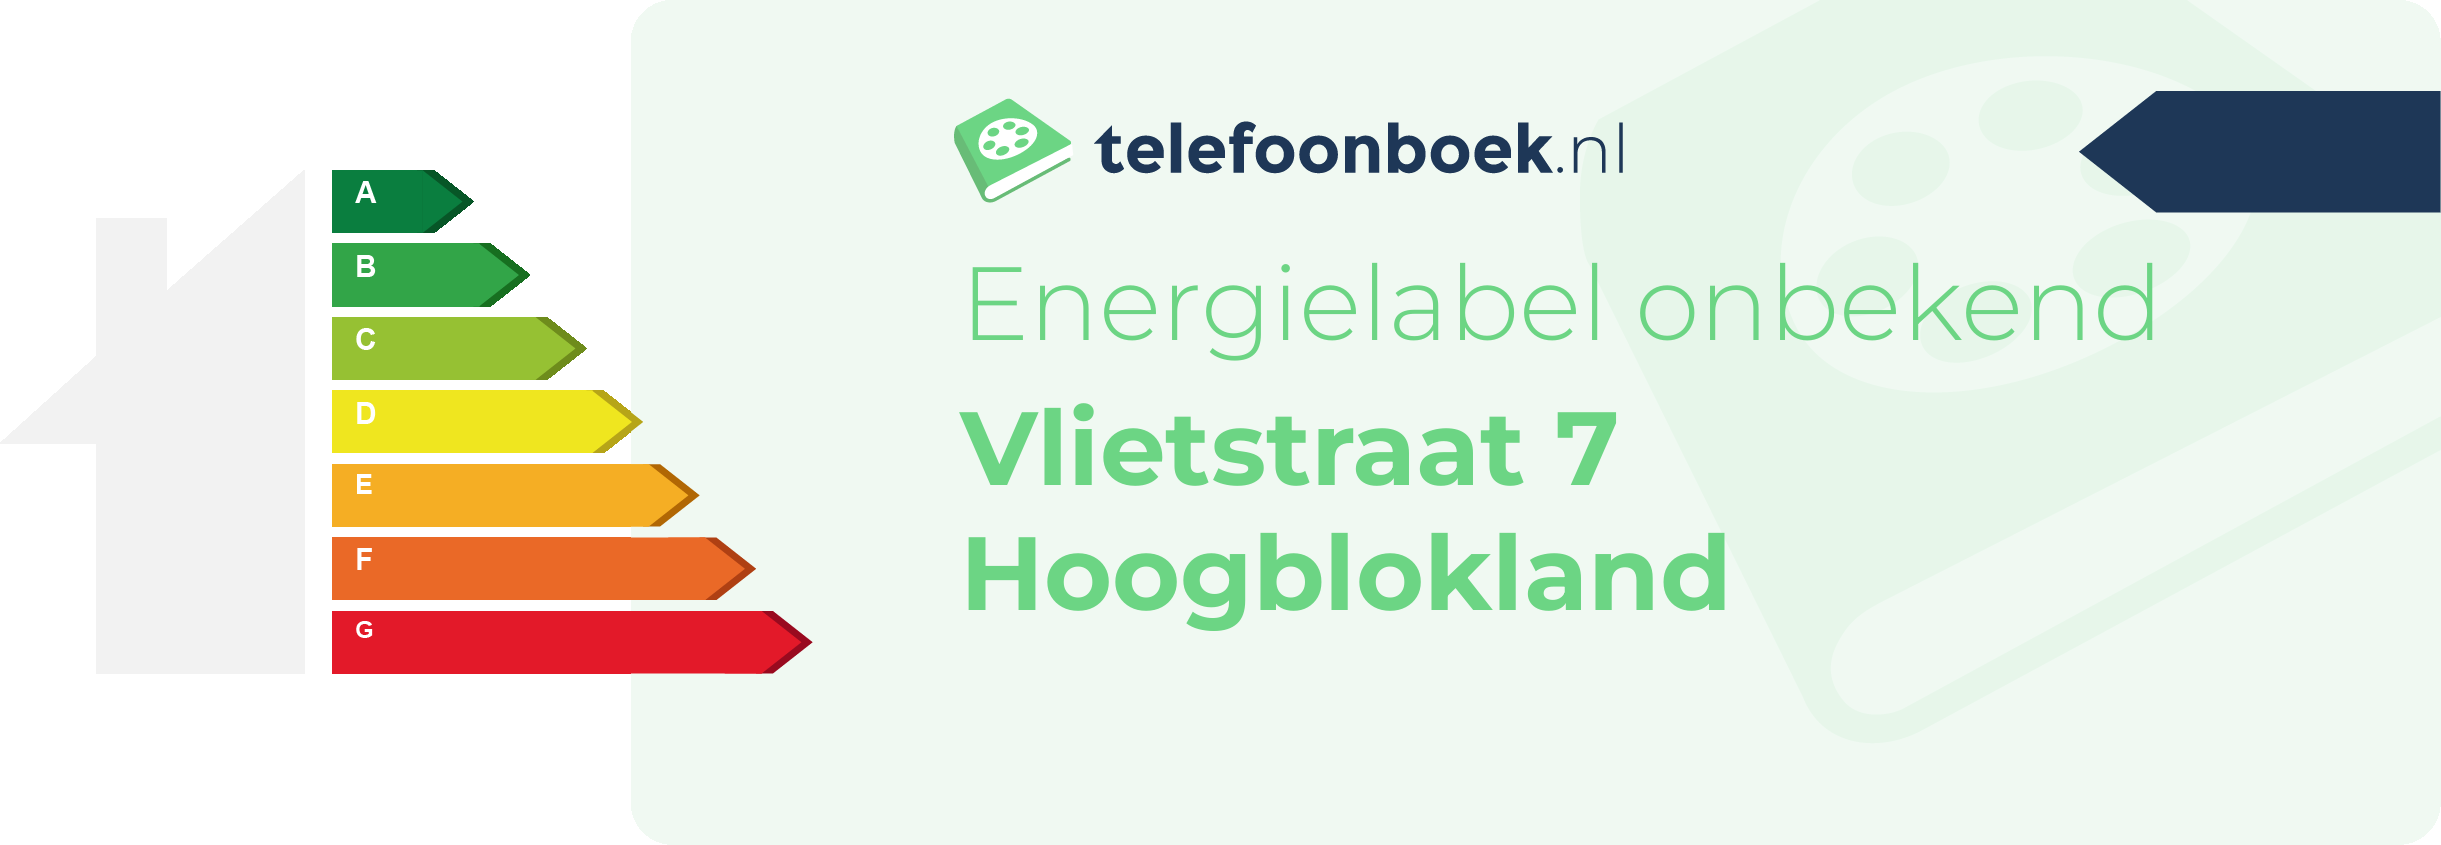 Energielabel Vlietstraat 7 Hoogblokland